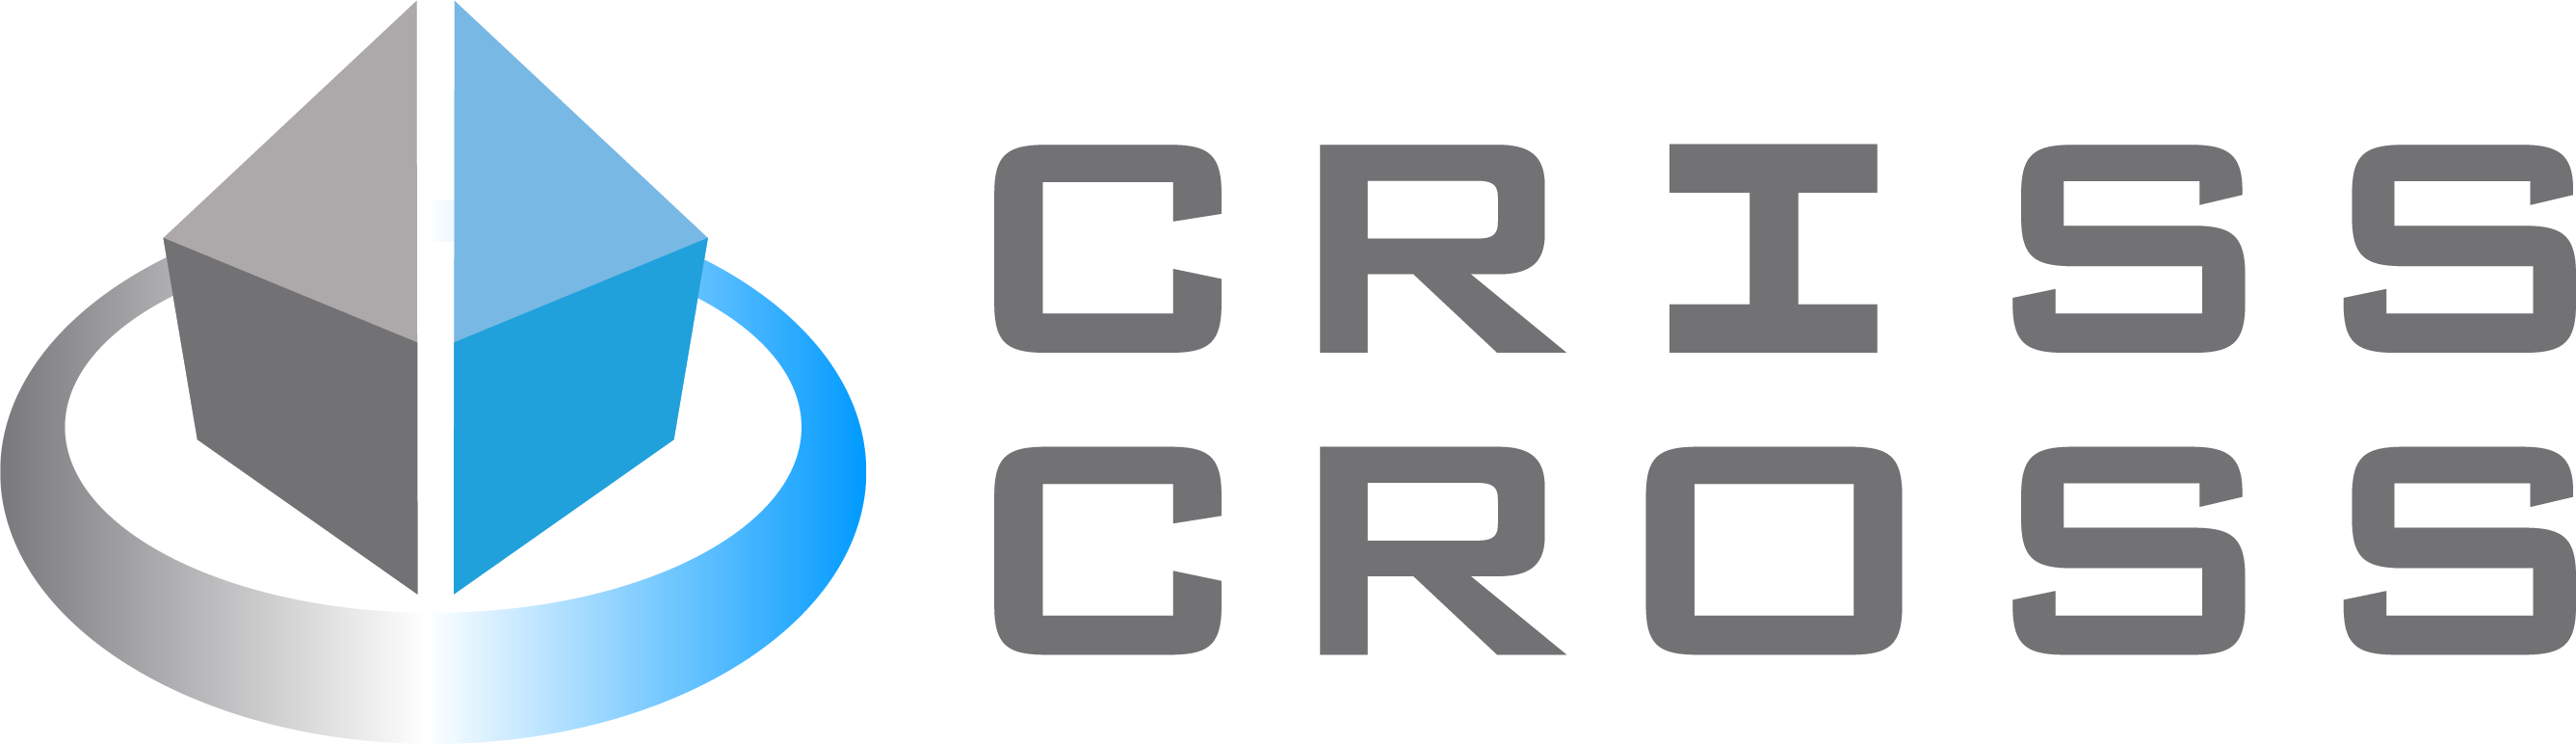 Criss Cross Construction